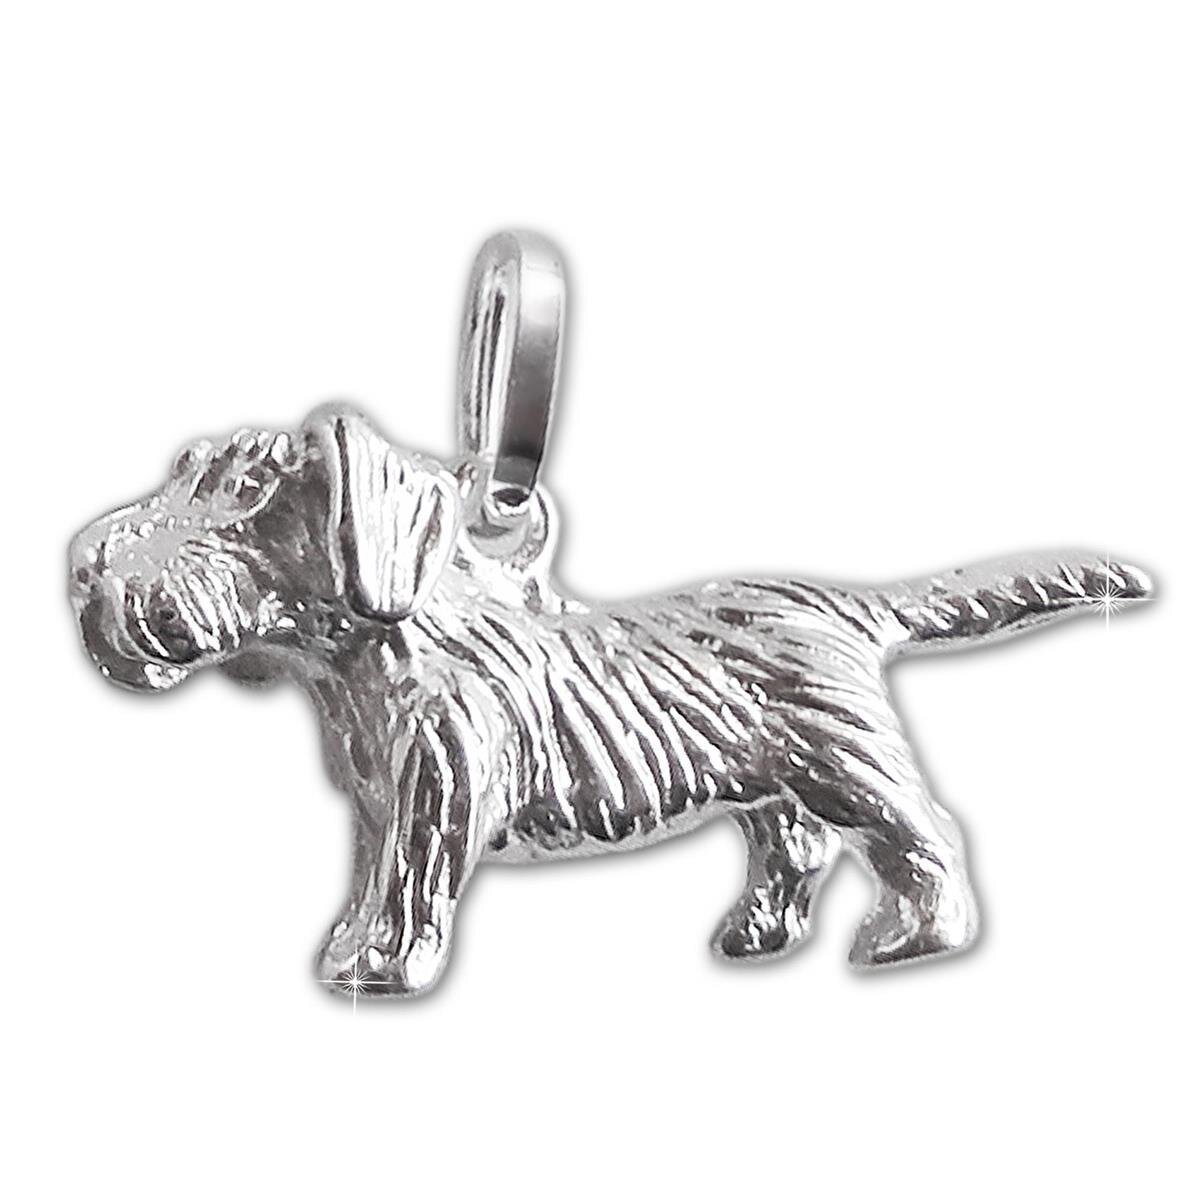 Silberner Rauhaardackel Hund Anhänger 20 mm figürlich Echt Silber 925